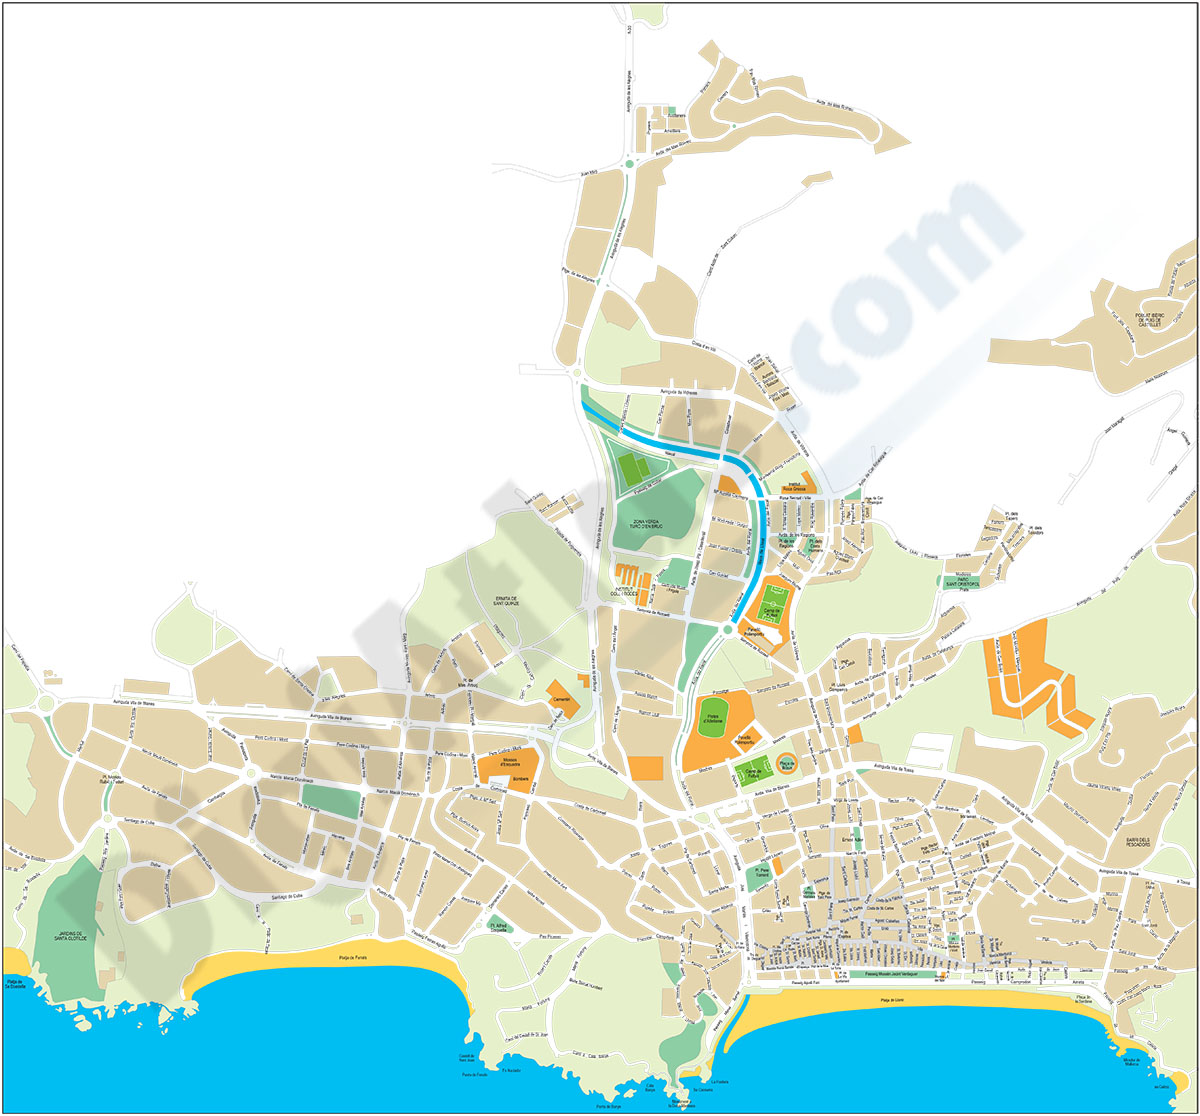 Lloret de Mar (Girona) - city map